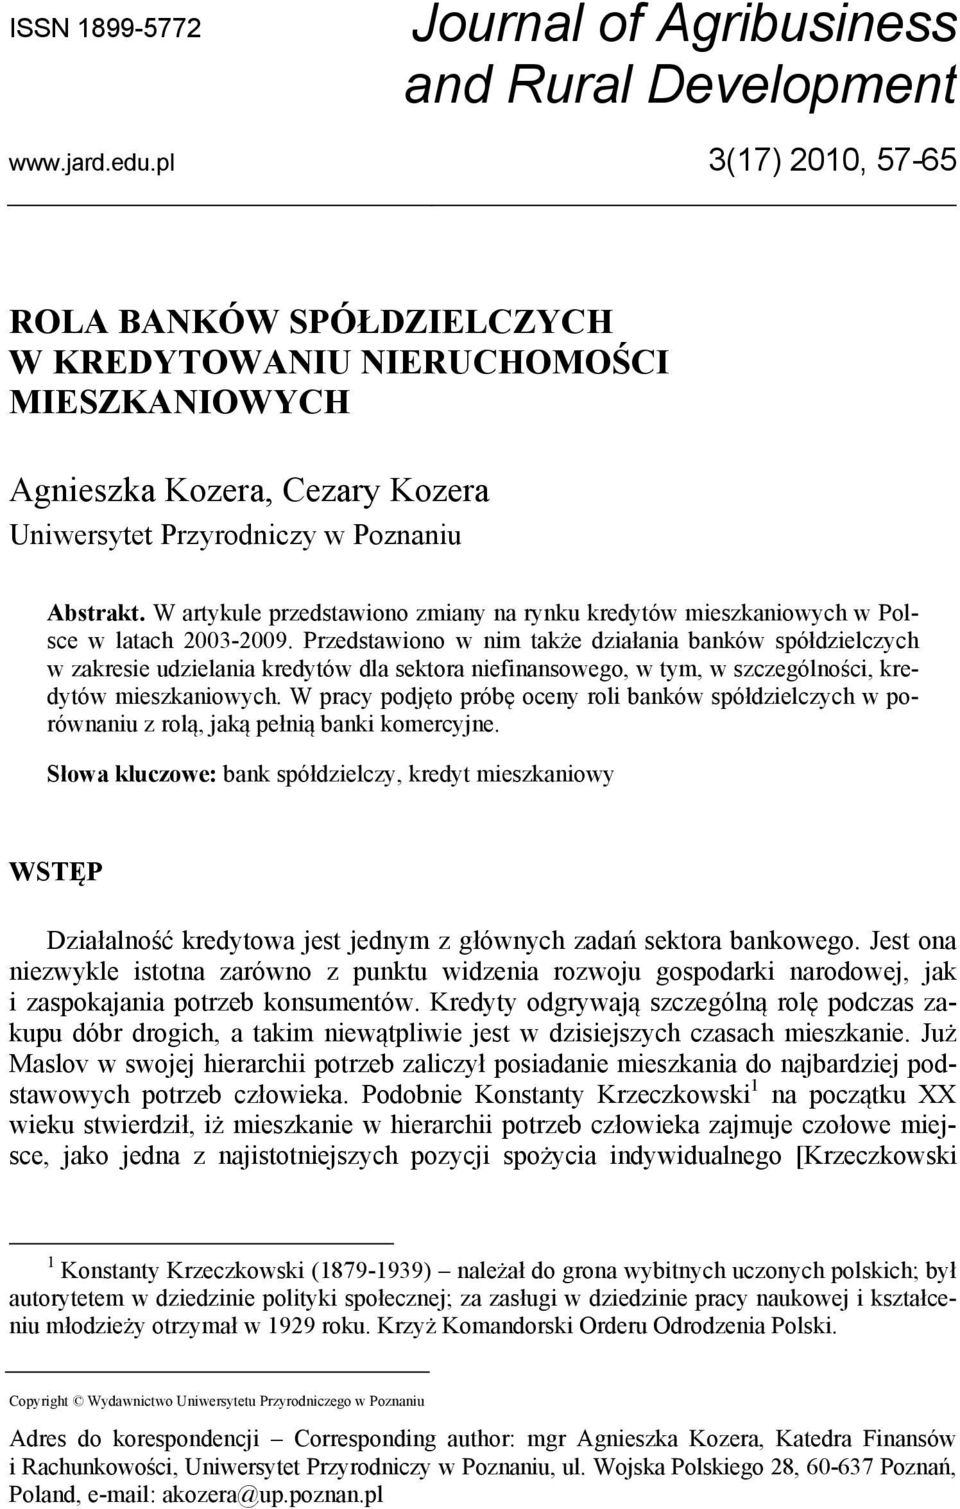 W artykule przedstawiono zmiany na rynku kredytów mieszkaniowych w Polsce w latach 2003-2009.